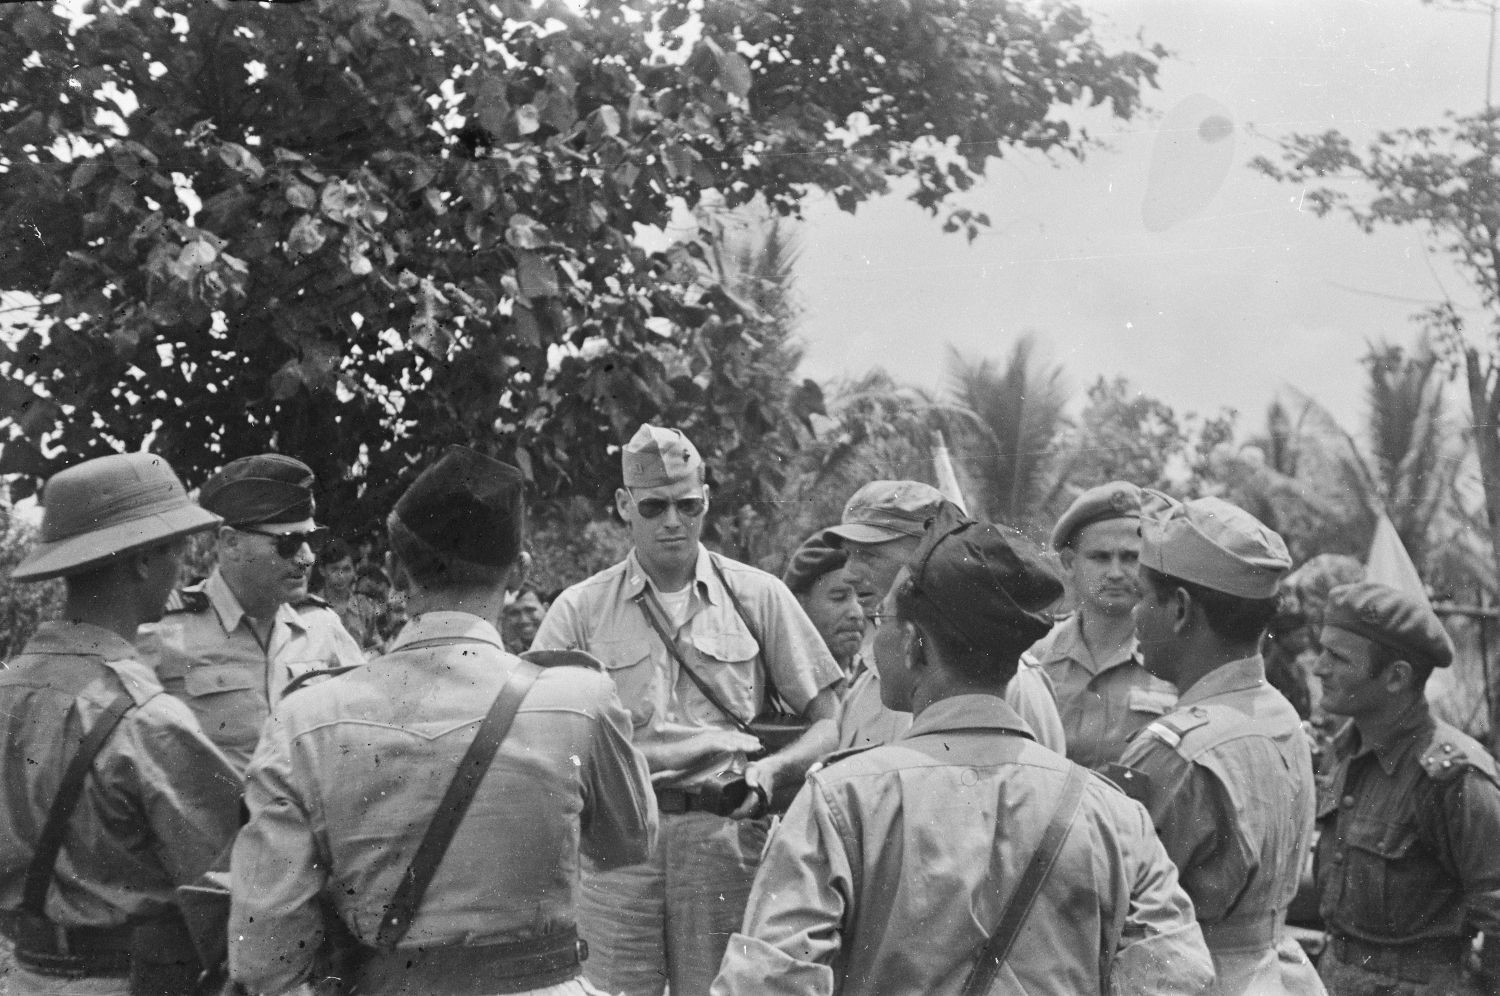 Nederlandse en Indonesische officieren overleggen in januari 1948 op Sumatra met internationale militaire waarnemers. In het midden met zonnebril de Amerikaanse kapitein J.A. Mac Naill, links naast hem, ook met zonnebril de Franse kapitein J. Rousset.